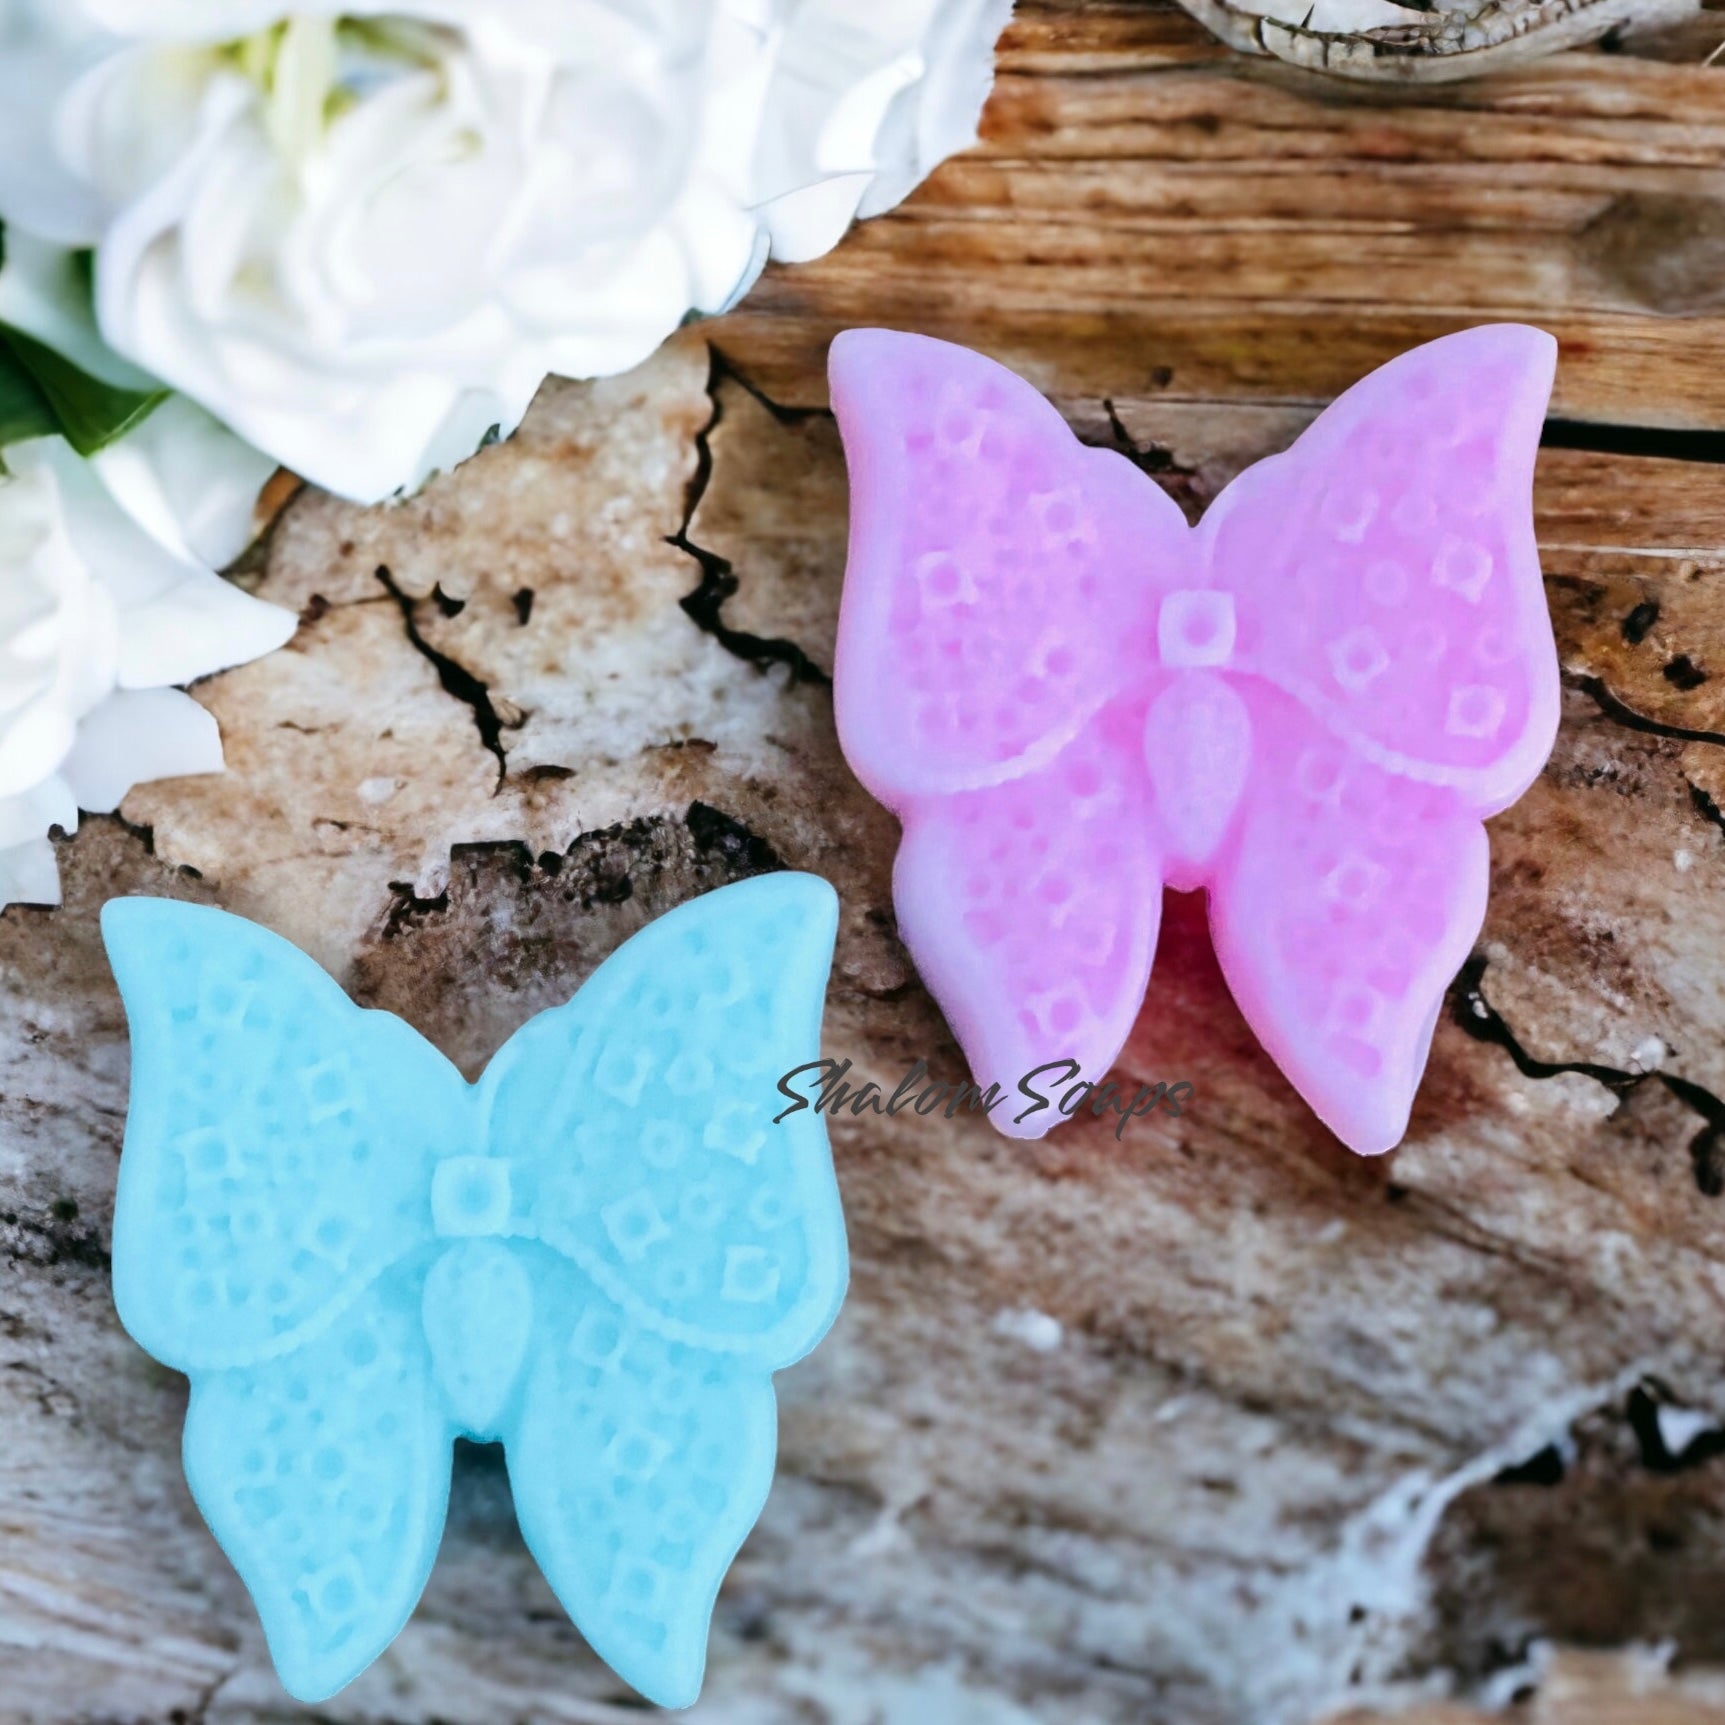 Butterfly Soap